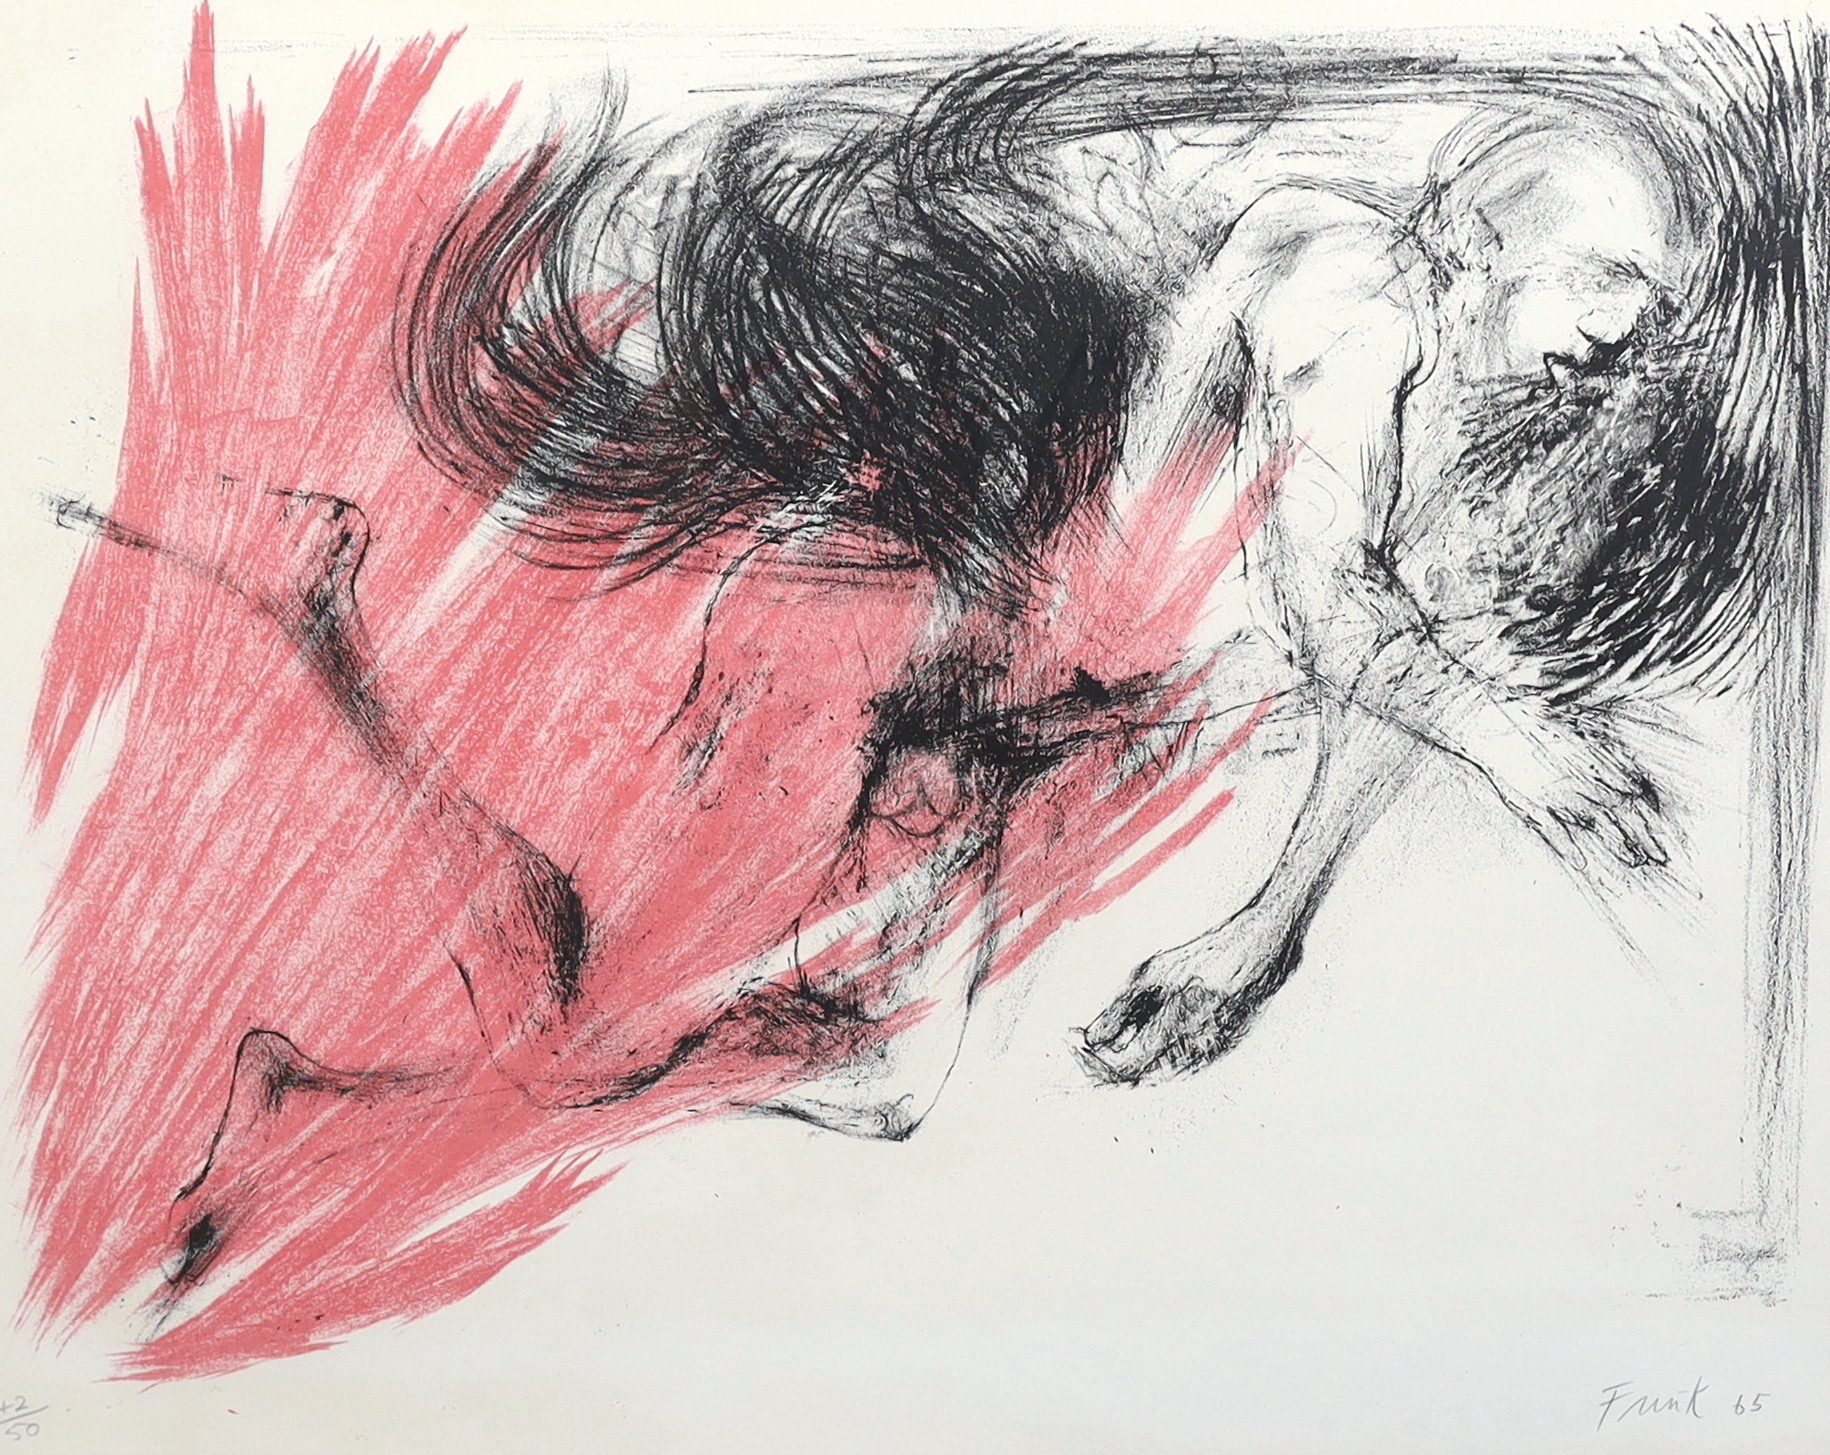 Dame Elisabeth Frink R.A (English, 1930-1993), 'Birdman', lithograph, 55 x 68cm